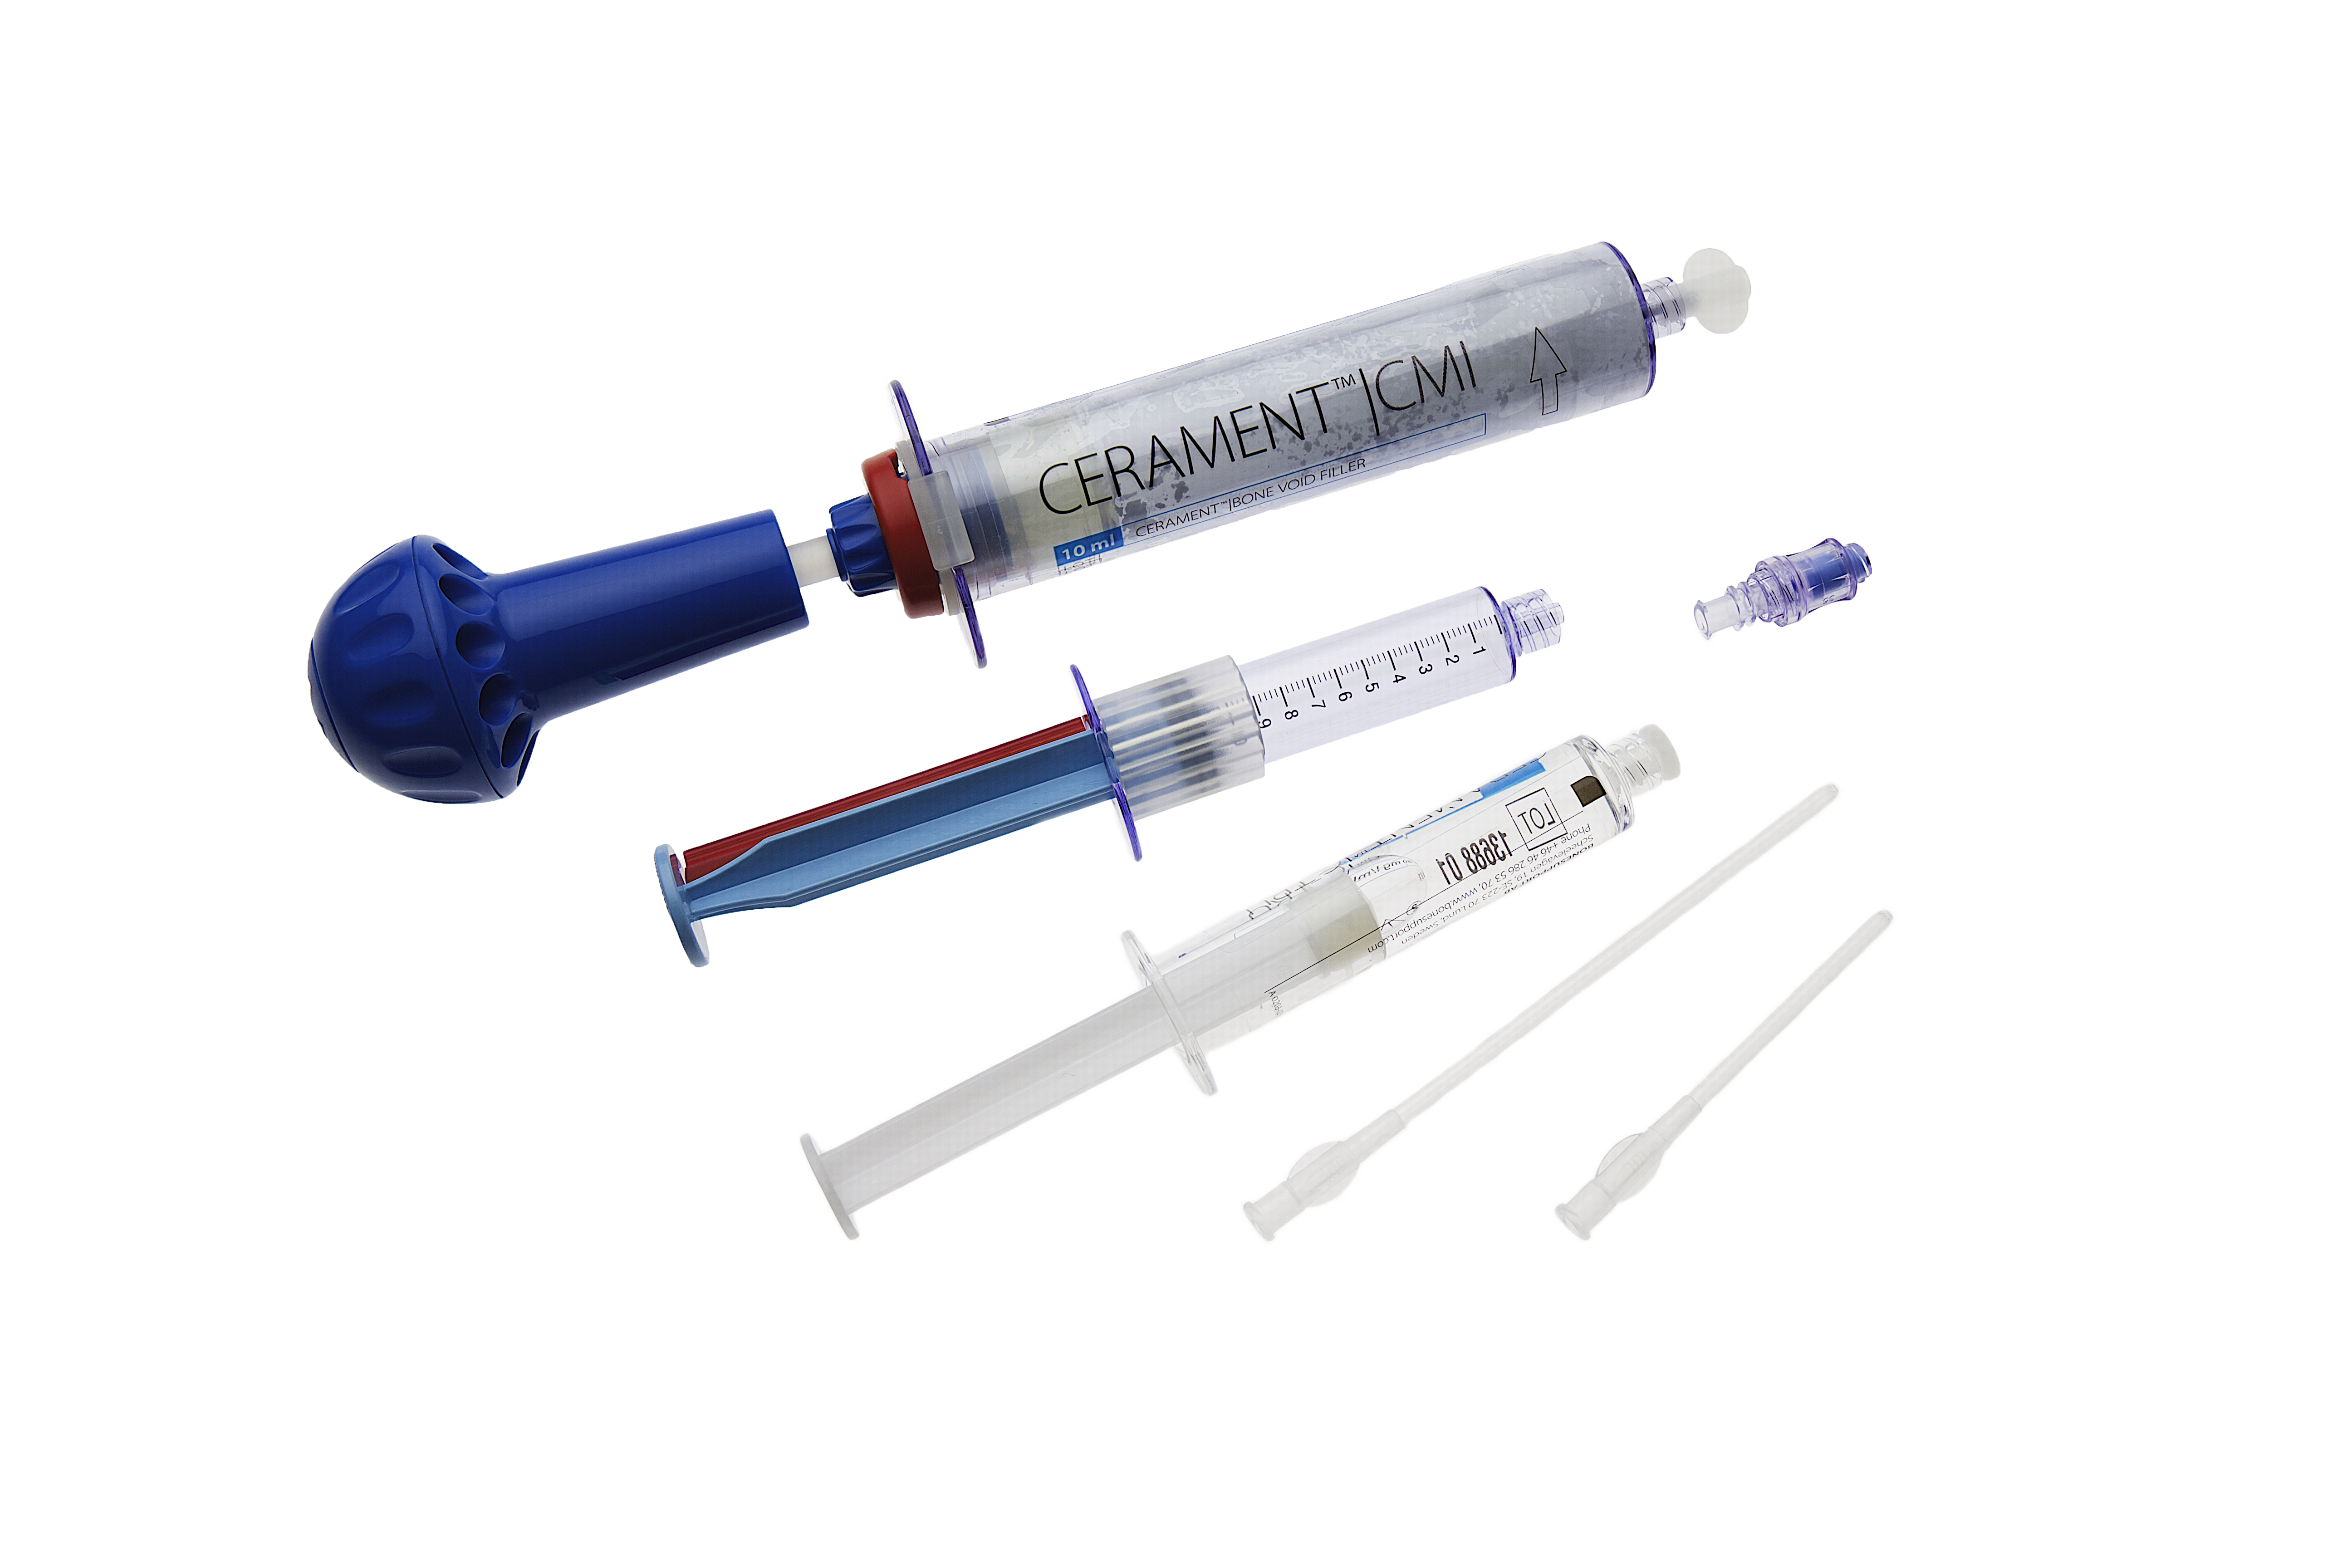 syringe instrument for cerament bone filler system